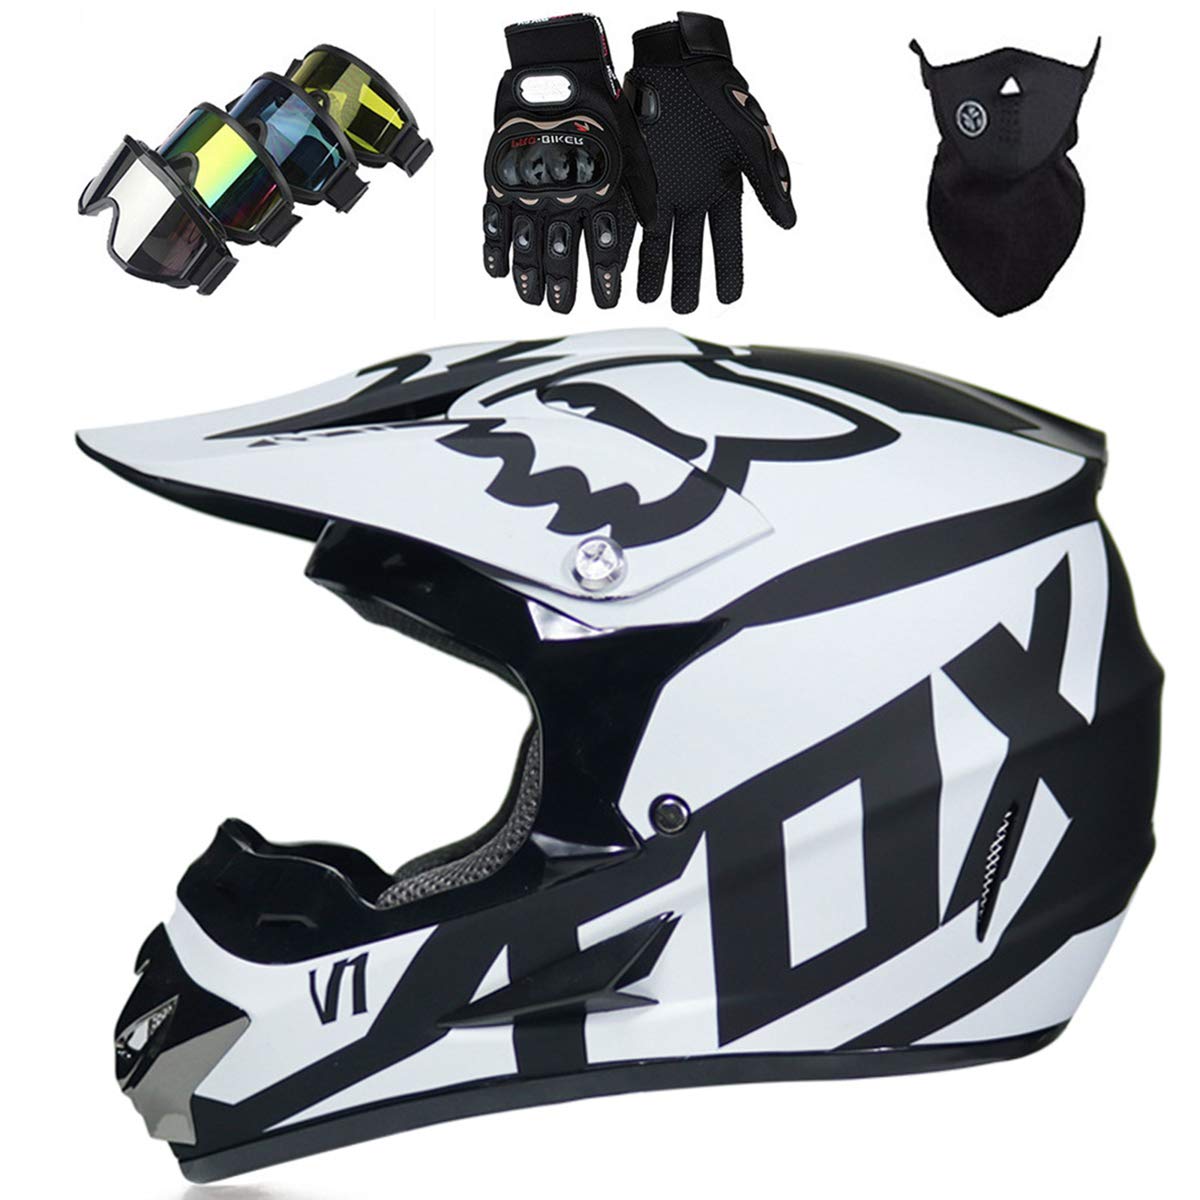 Motorradhelm - JMY-01 Motocross Helm Set - Dirt Bike Fullface Offroad Motorrad Helm mit Schutzbrille Geeignet für Kinder von 5 Bis 14 Jahren mit Fox Design - Schwarz-Weiss - S/M/L/XL,XL von KIVEM